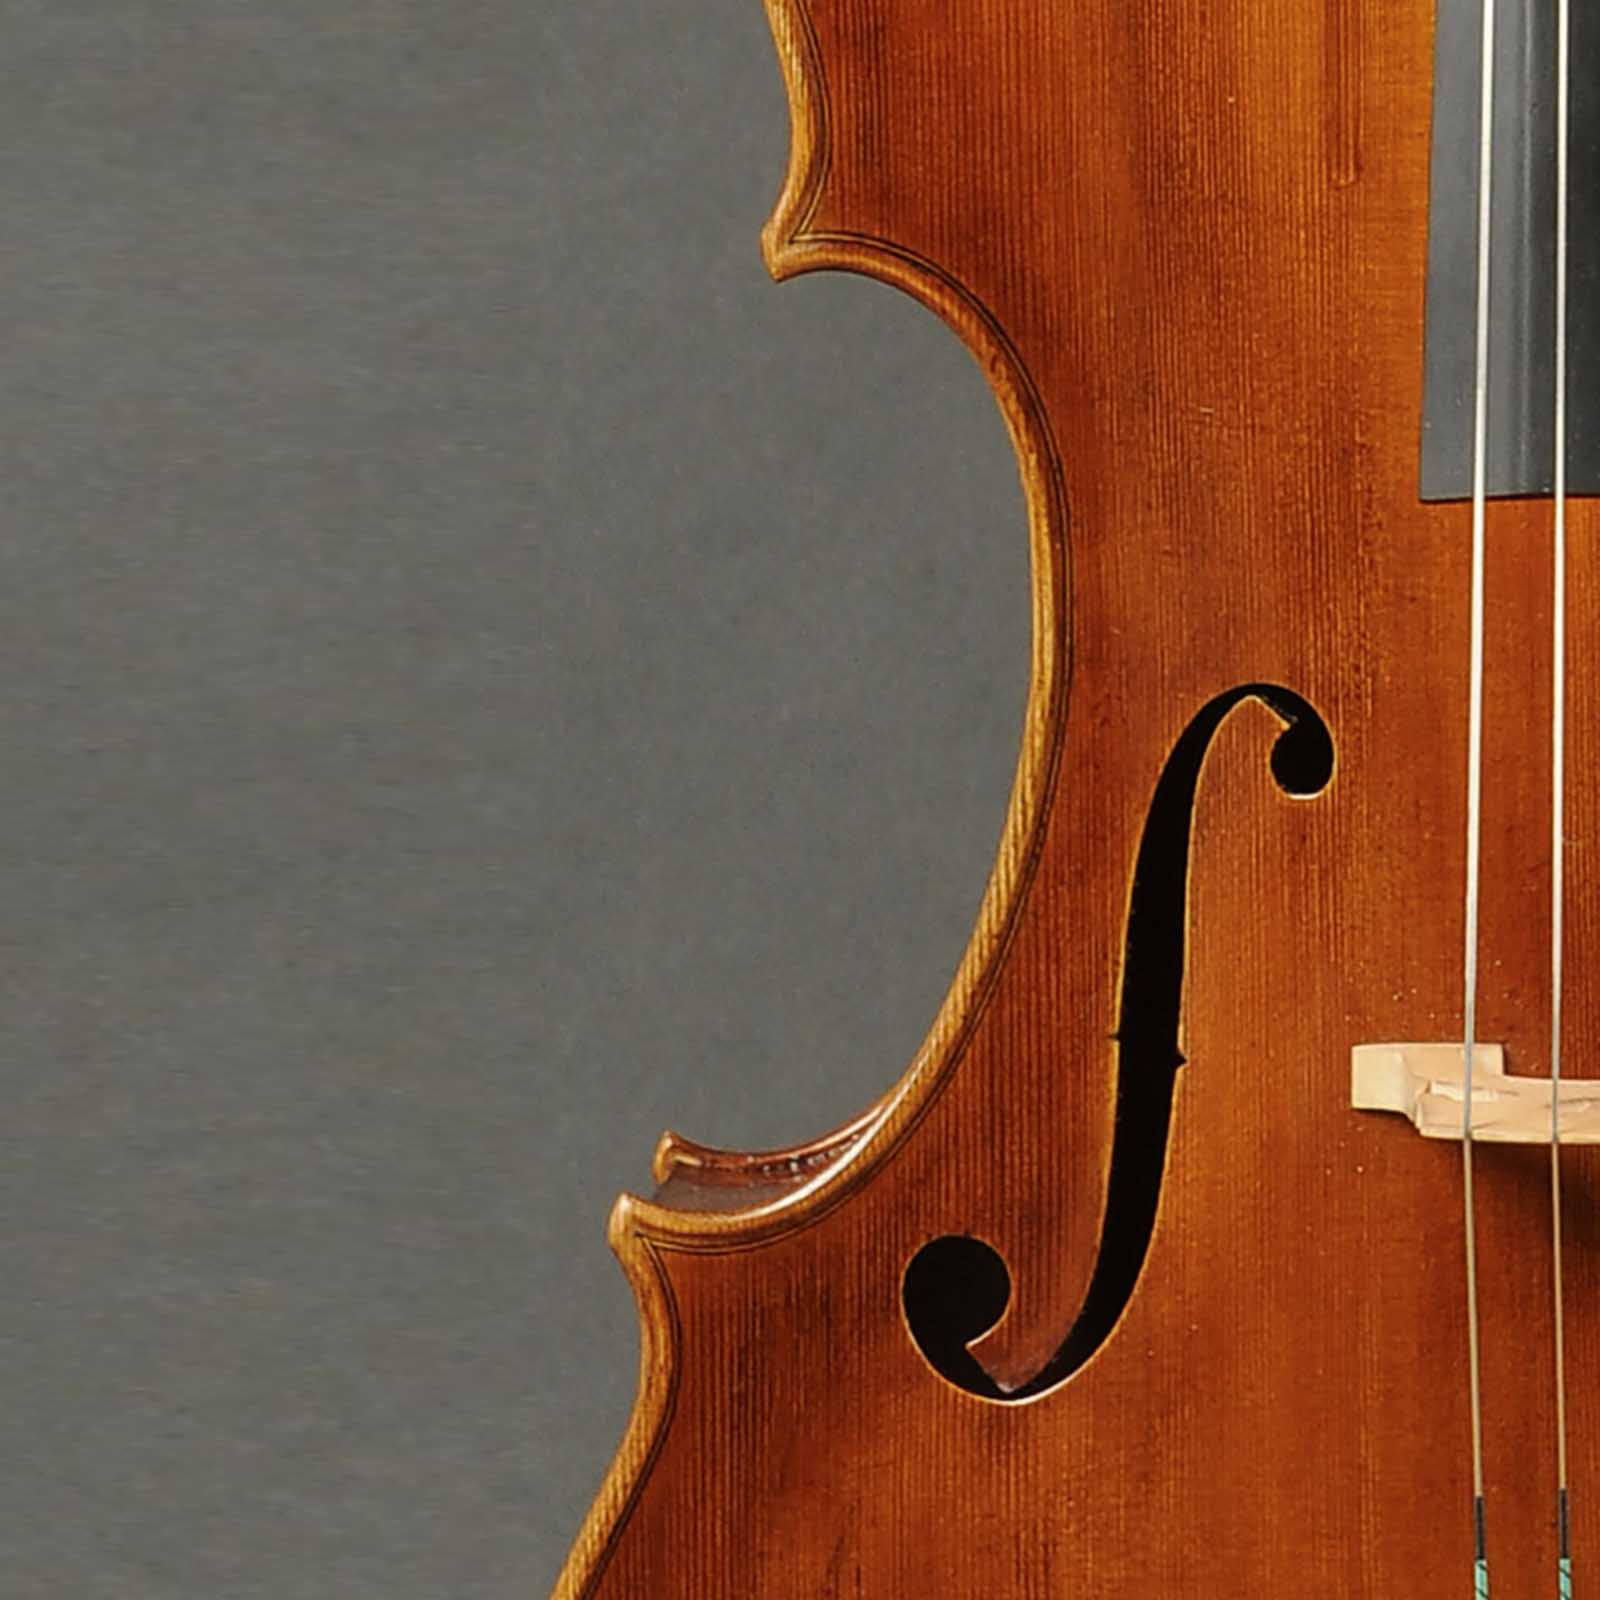 Antonio Stradivari Cremona 1730 “Feuermann“ “Fondo Unico“ - Image 3